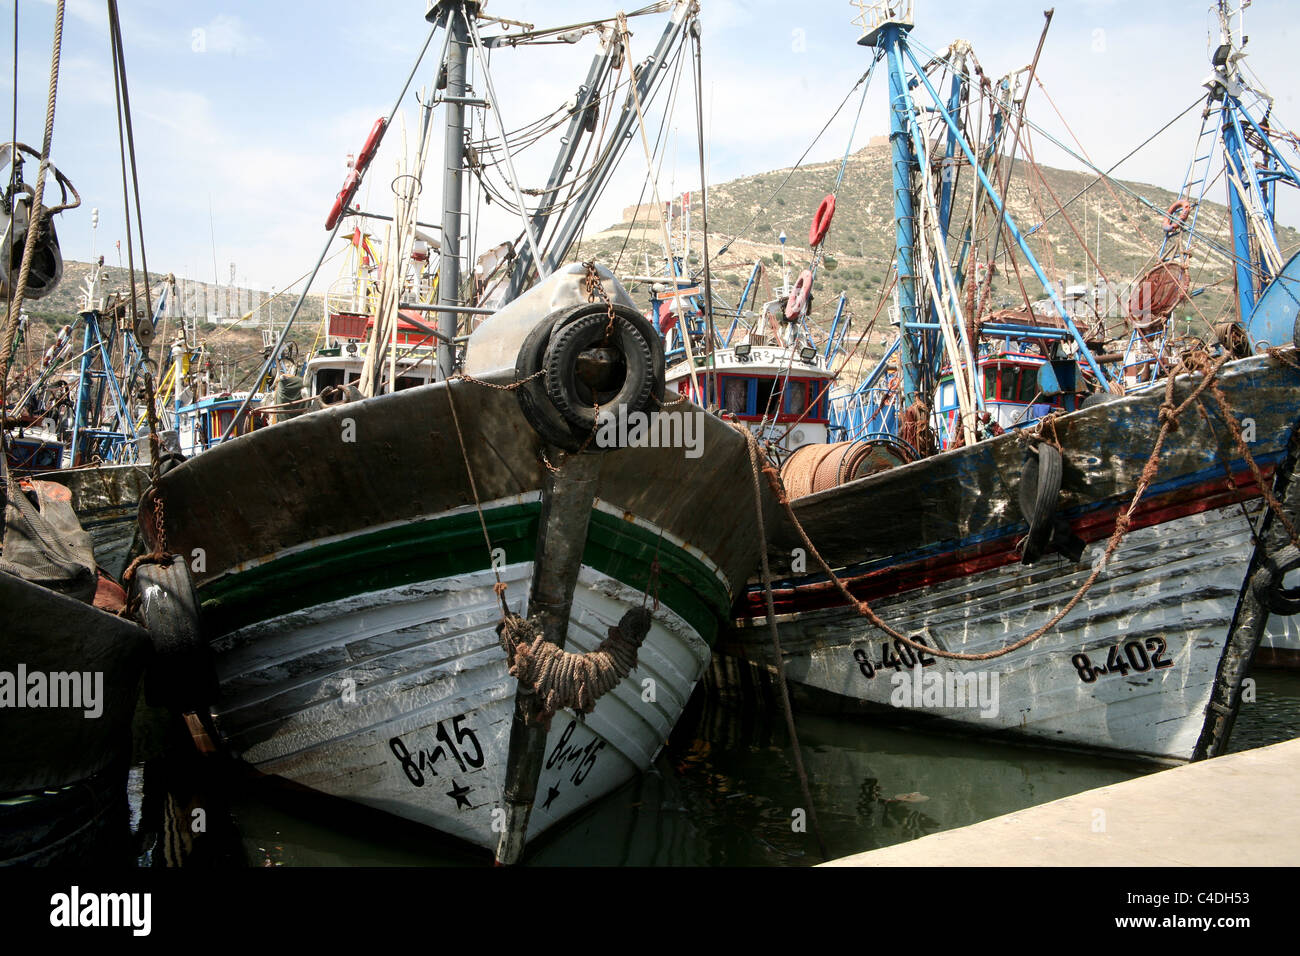 Bateaux de pêche au port d'Agadir, Maroc Banque D'Images